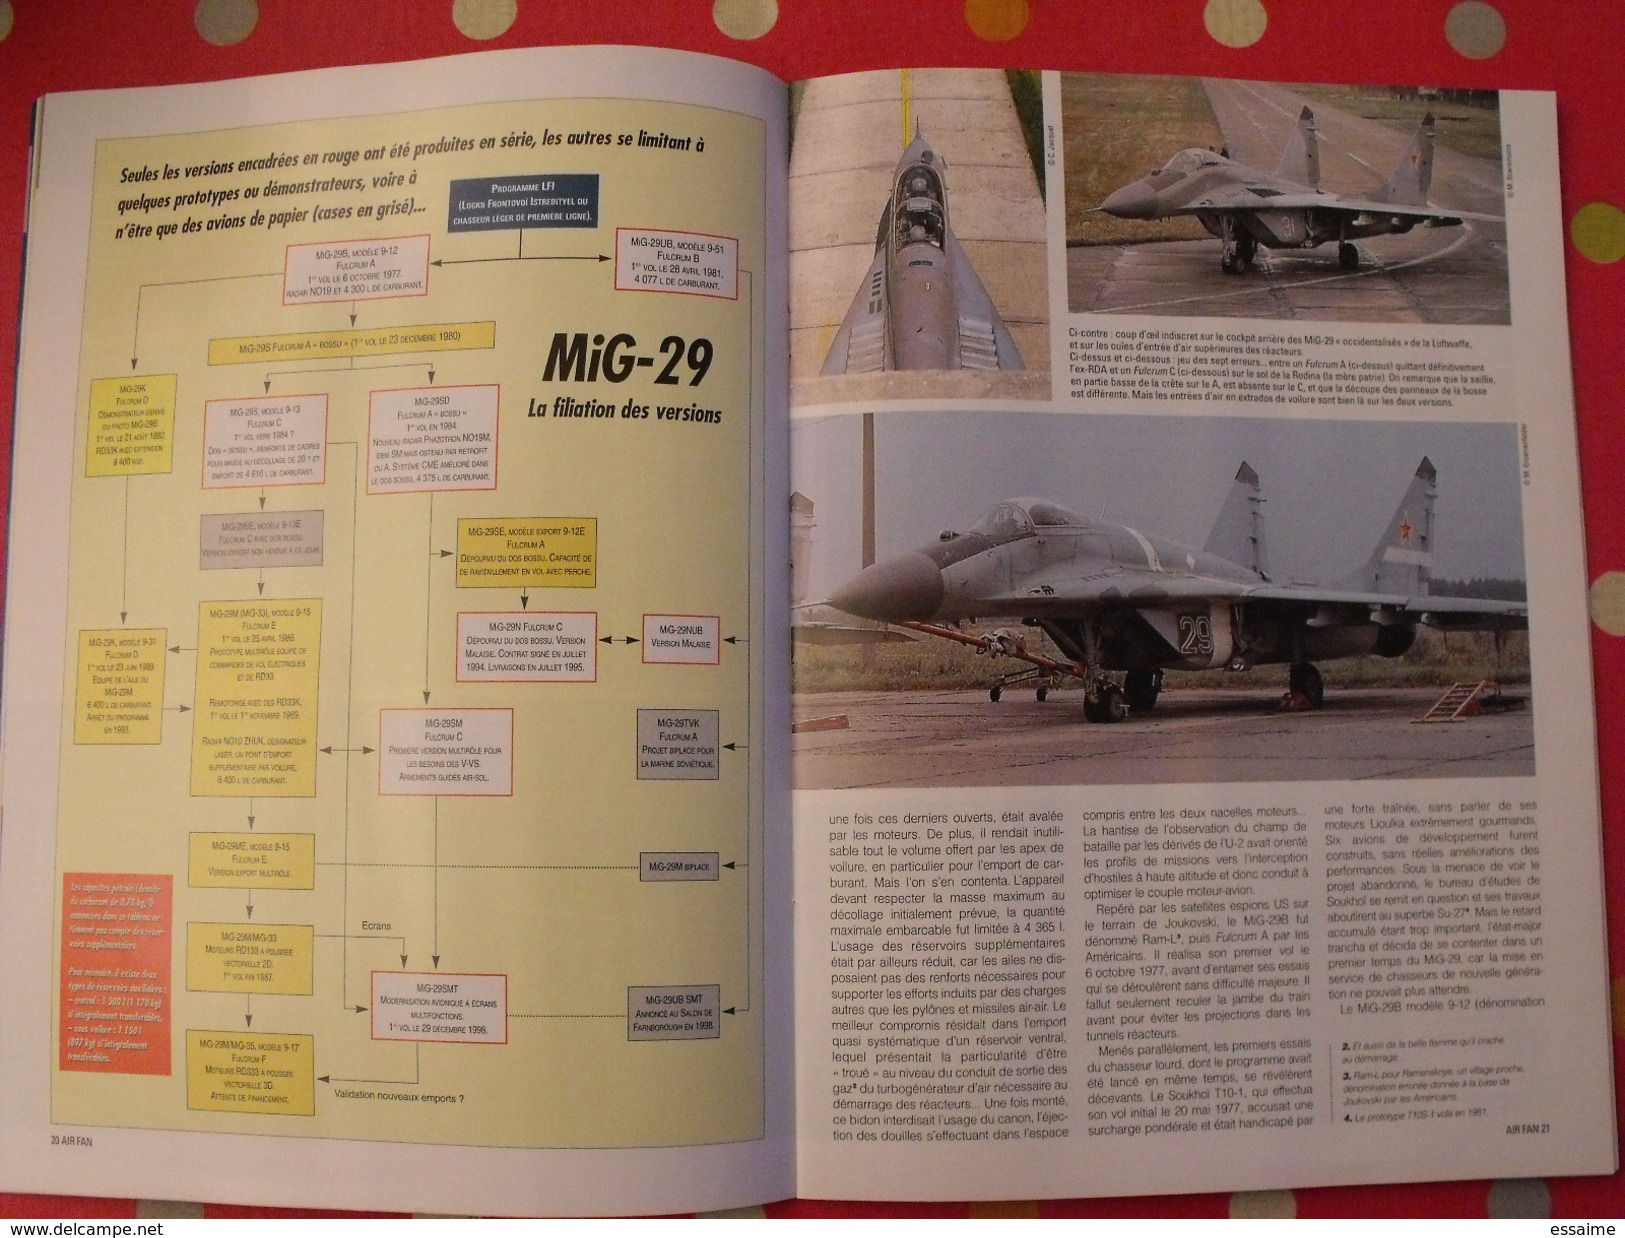 4 revues Air Fan. aéronautique militaire international. 1999, 2001.posters avions de combat  mig mirage rafale F15 Su-27